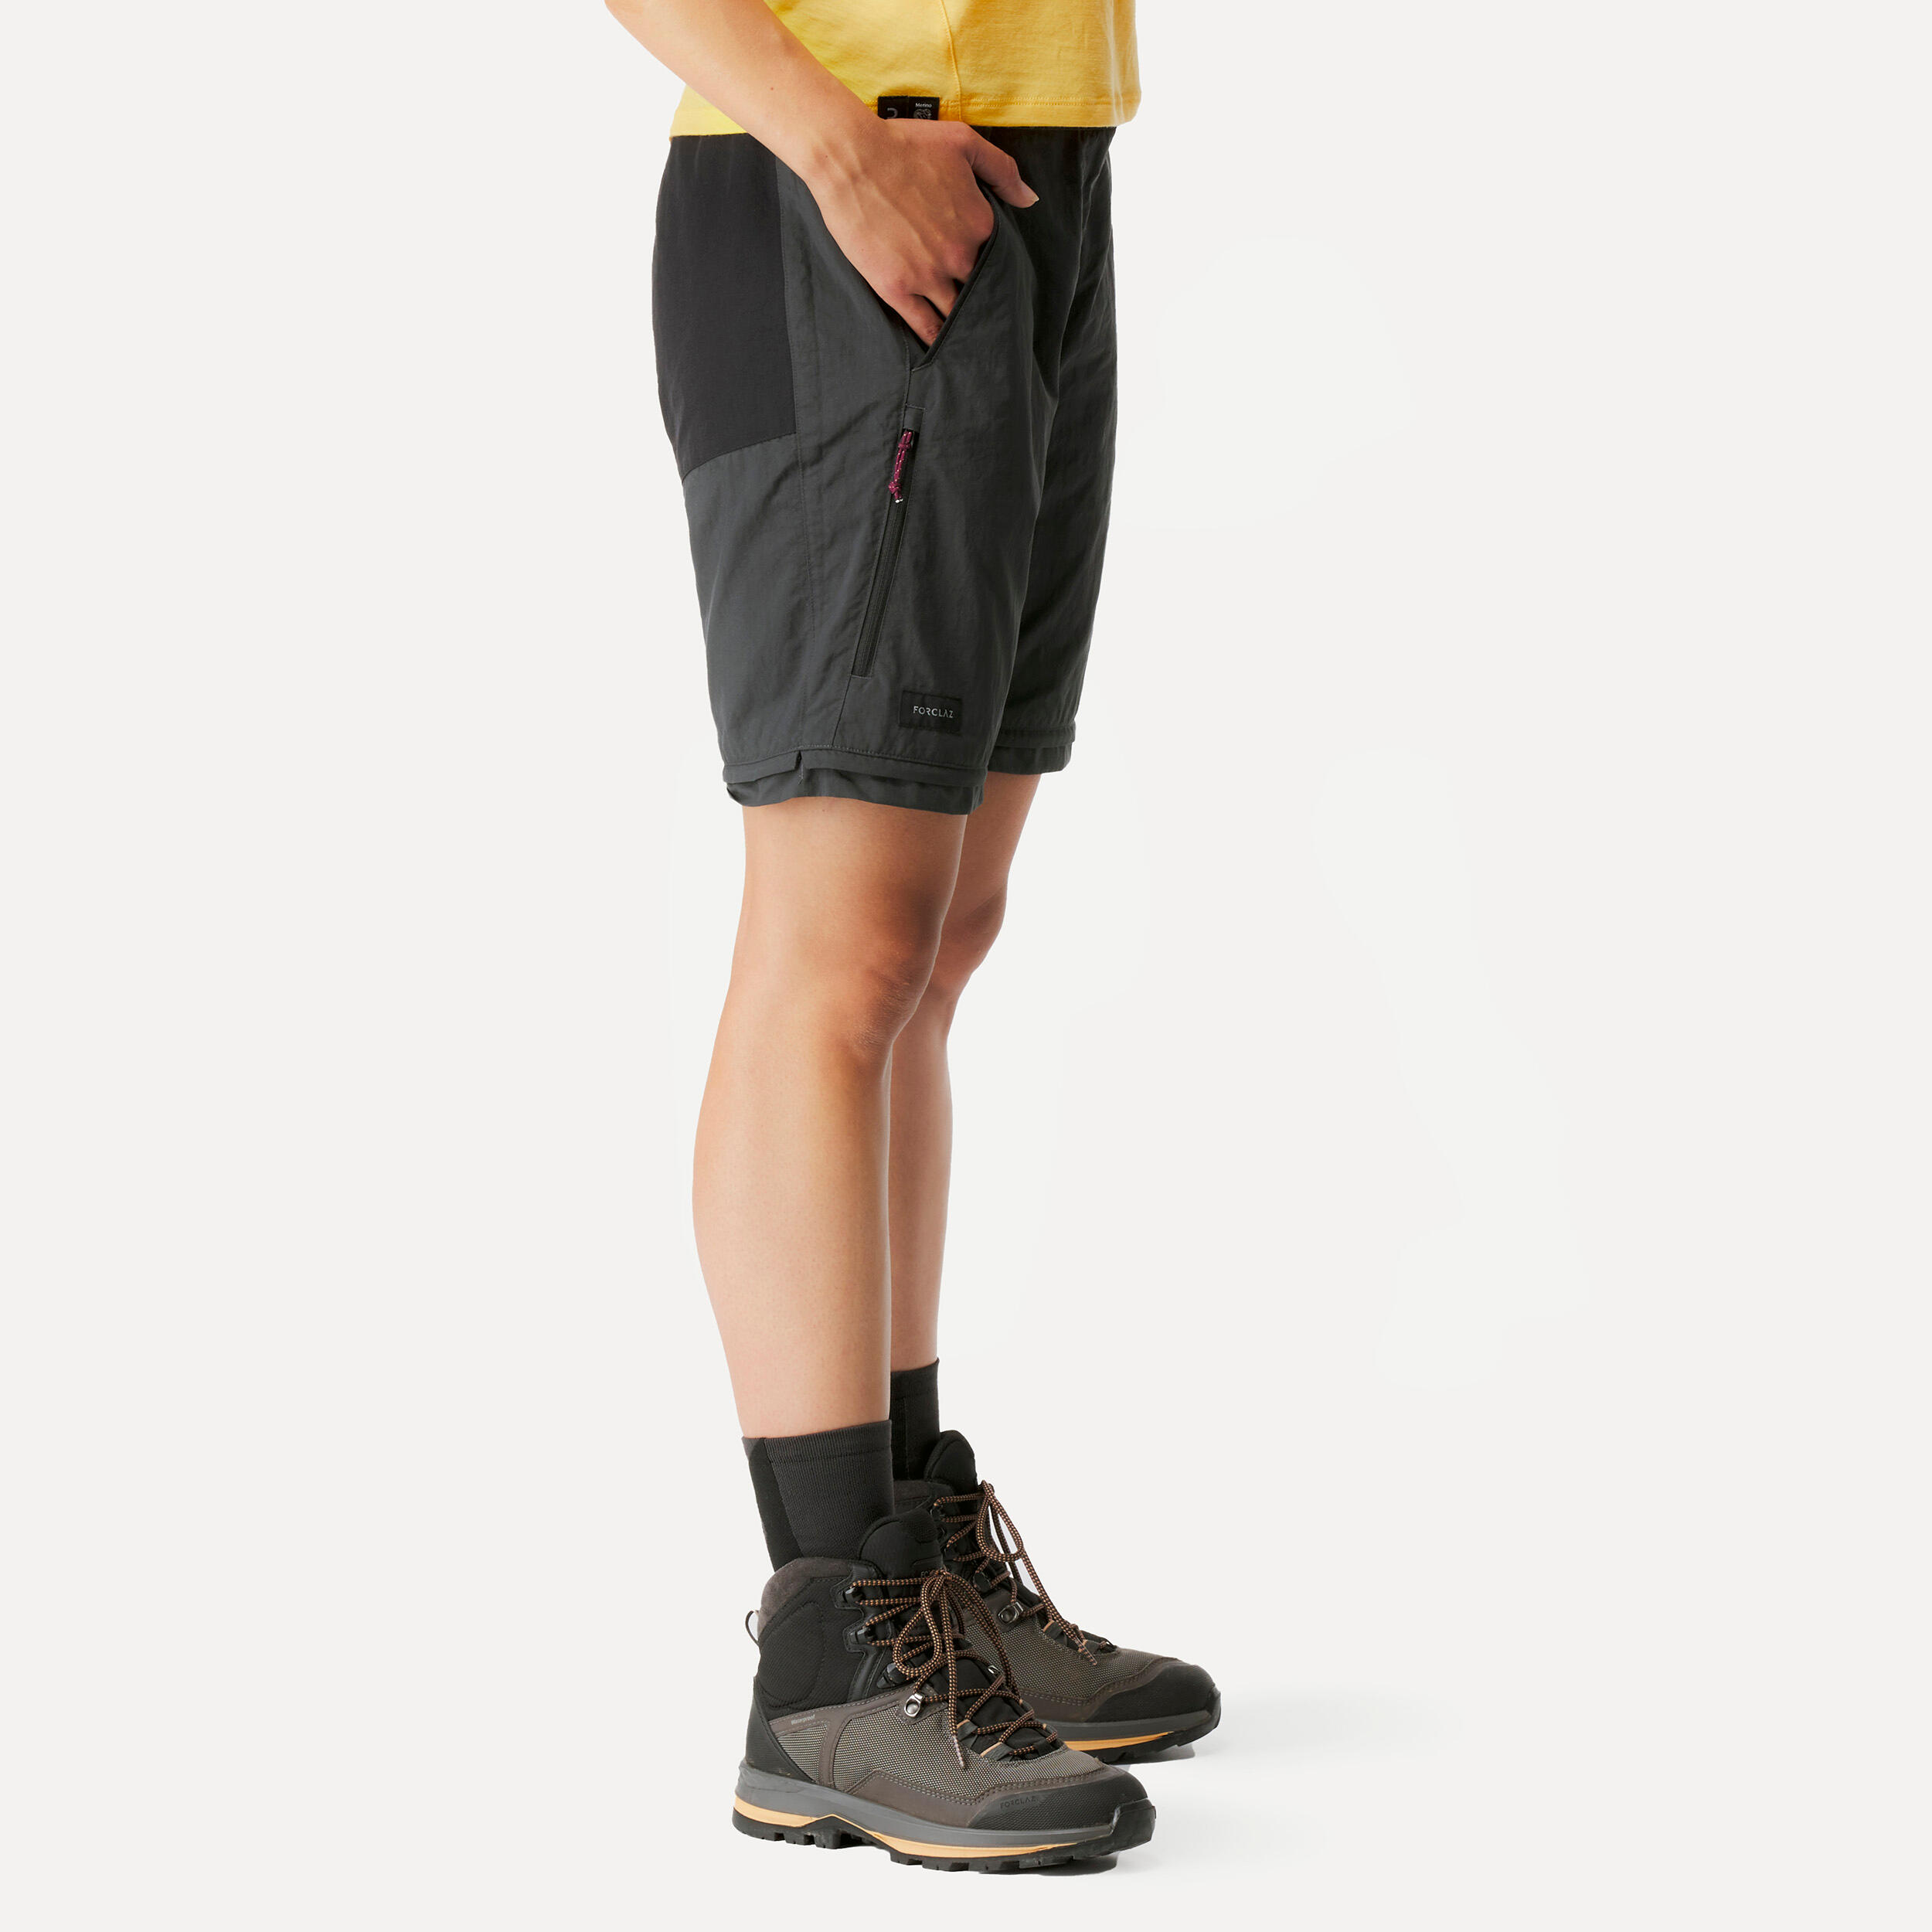 Pantalon convertible femme – MT 100 - FORCLAZ